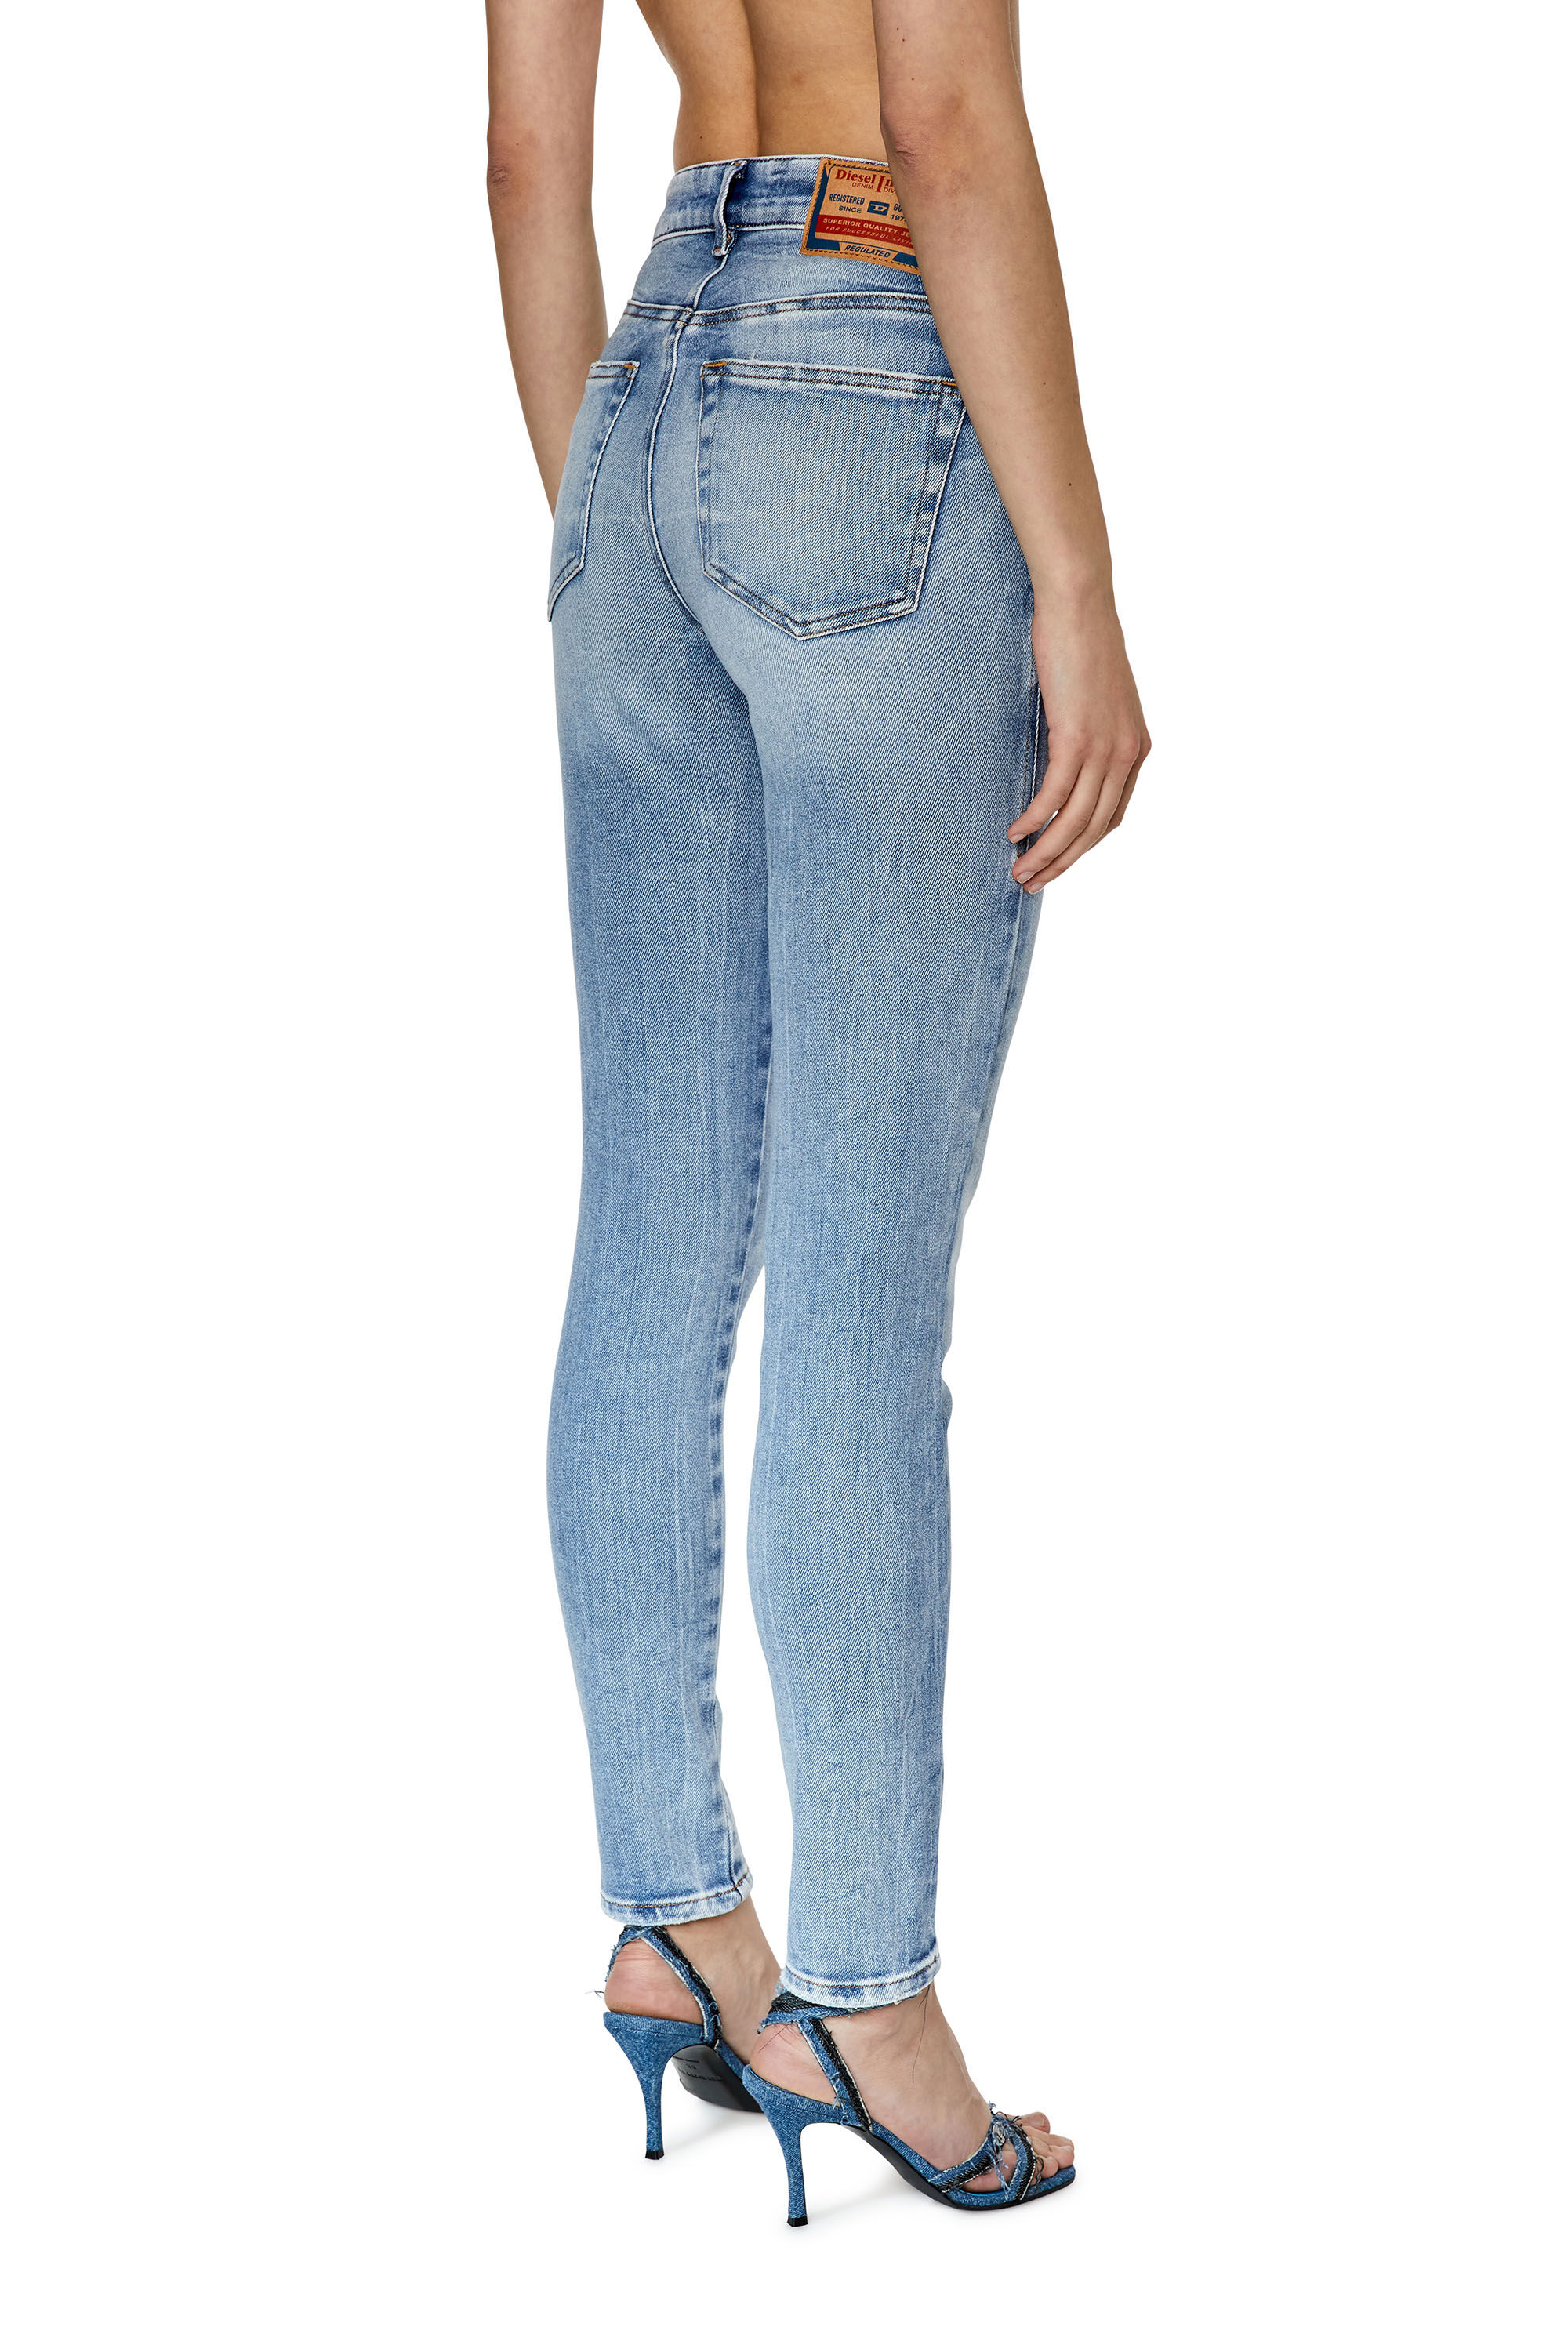 Women's Jeans | blue | Diesel 2017 Slandy